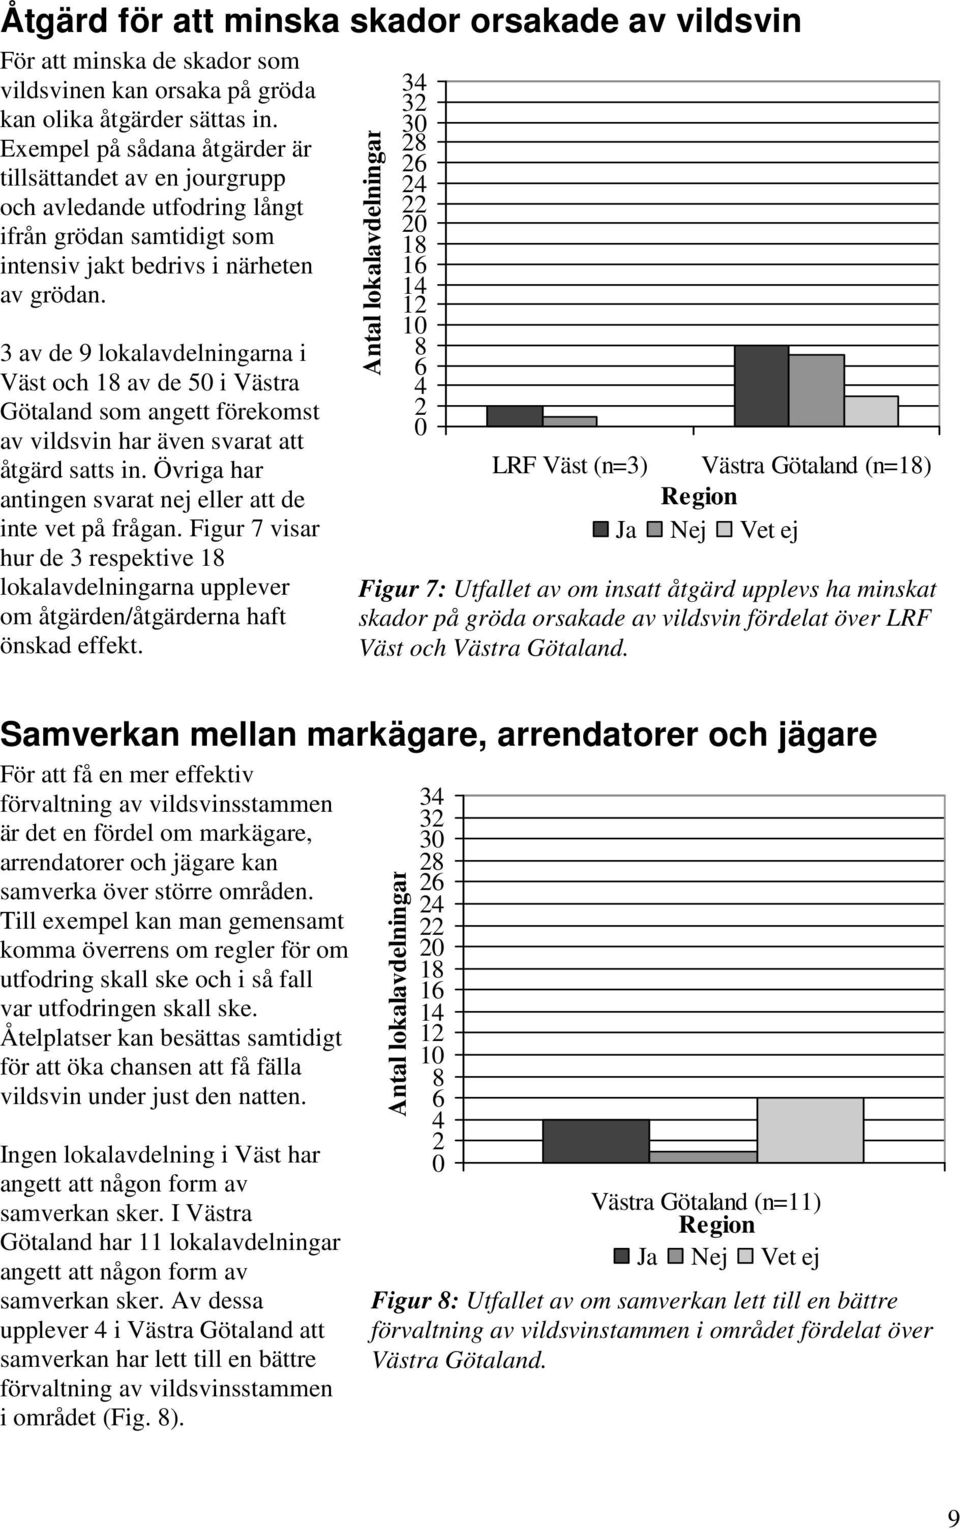 3 av de 9 lokalavdelningarna i Väst och 1 av de 5 i Västra Götaland som angett förekomst av vildsvin har även svarat att åtgärd satts in.